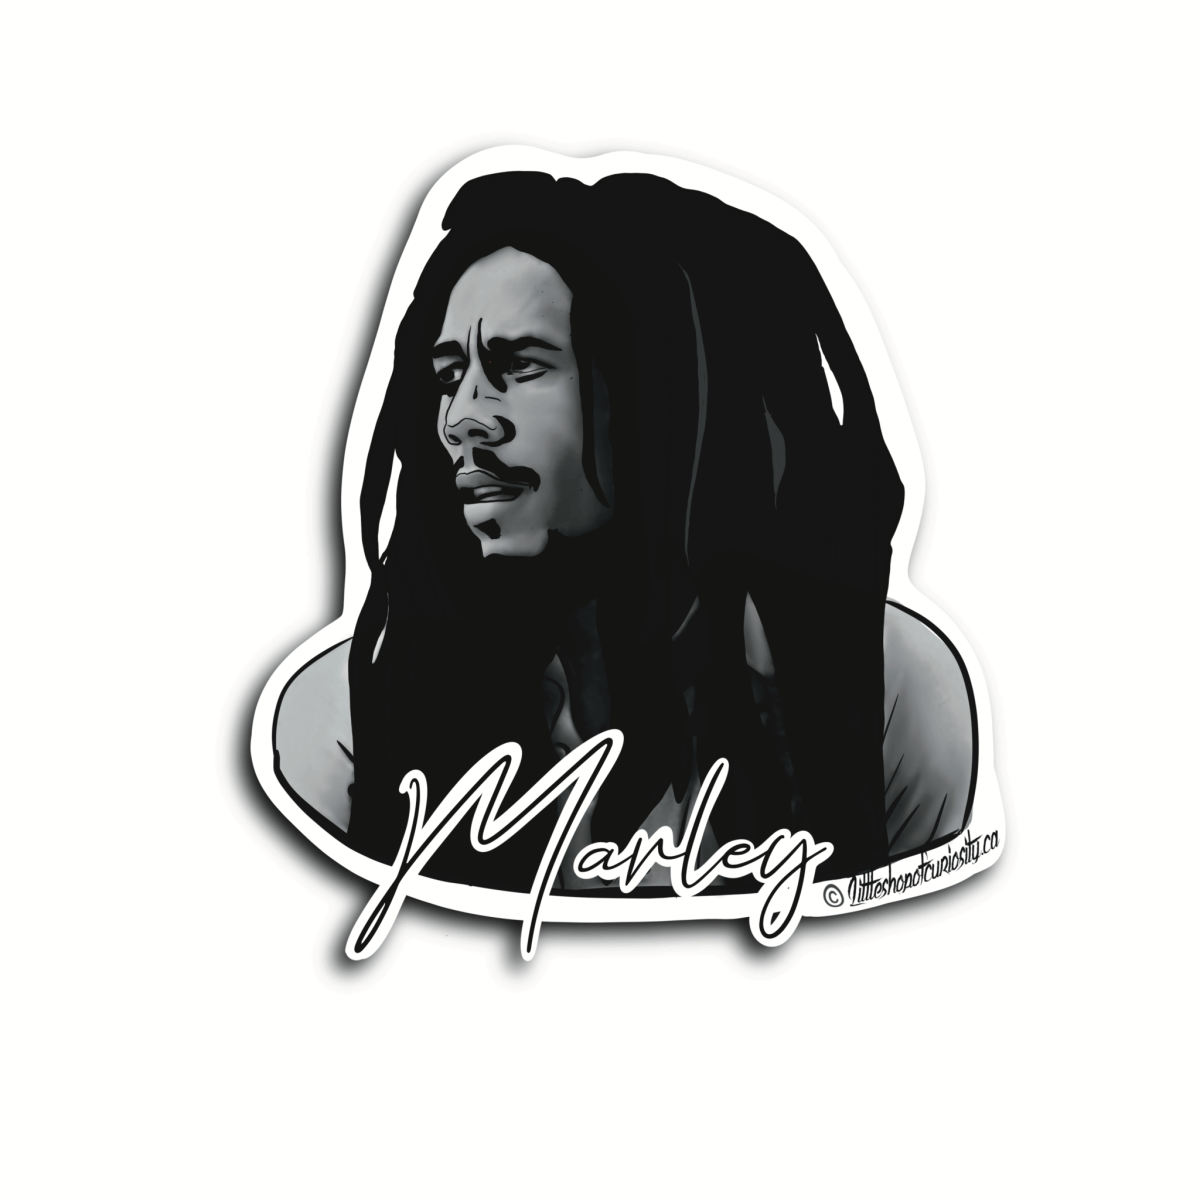 Bob Marley Sticker - Black & White Sticker - Little Shop of Curiosity